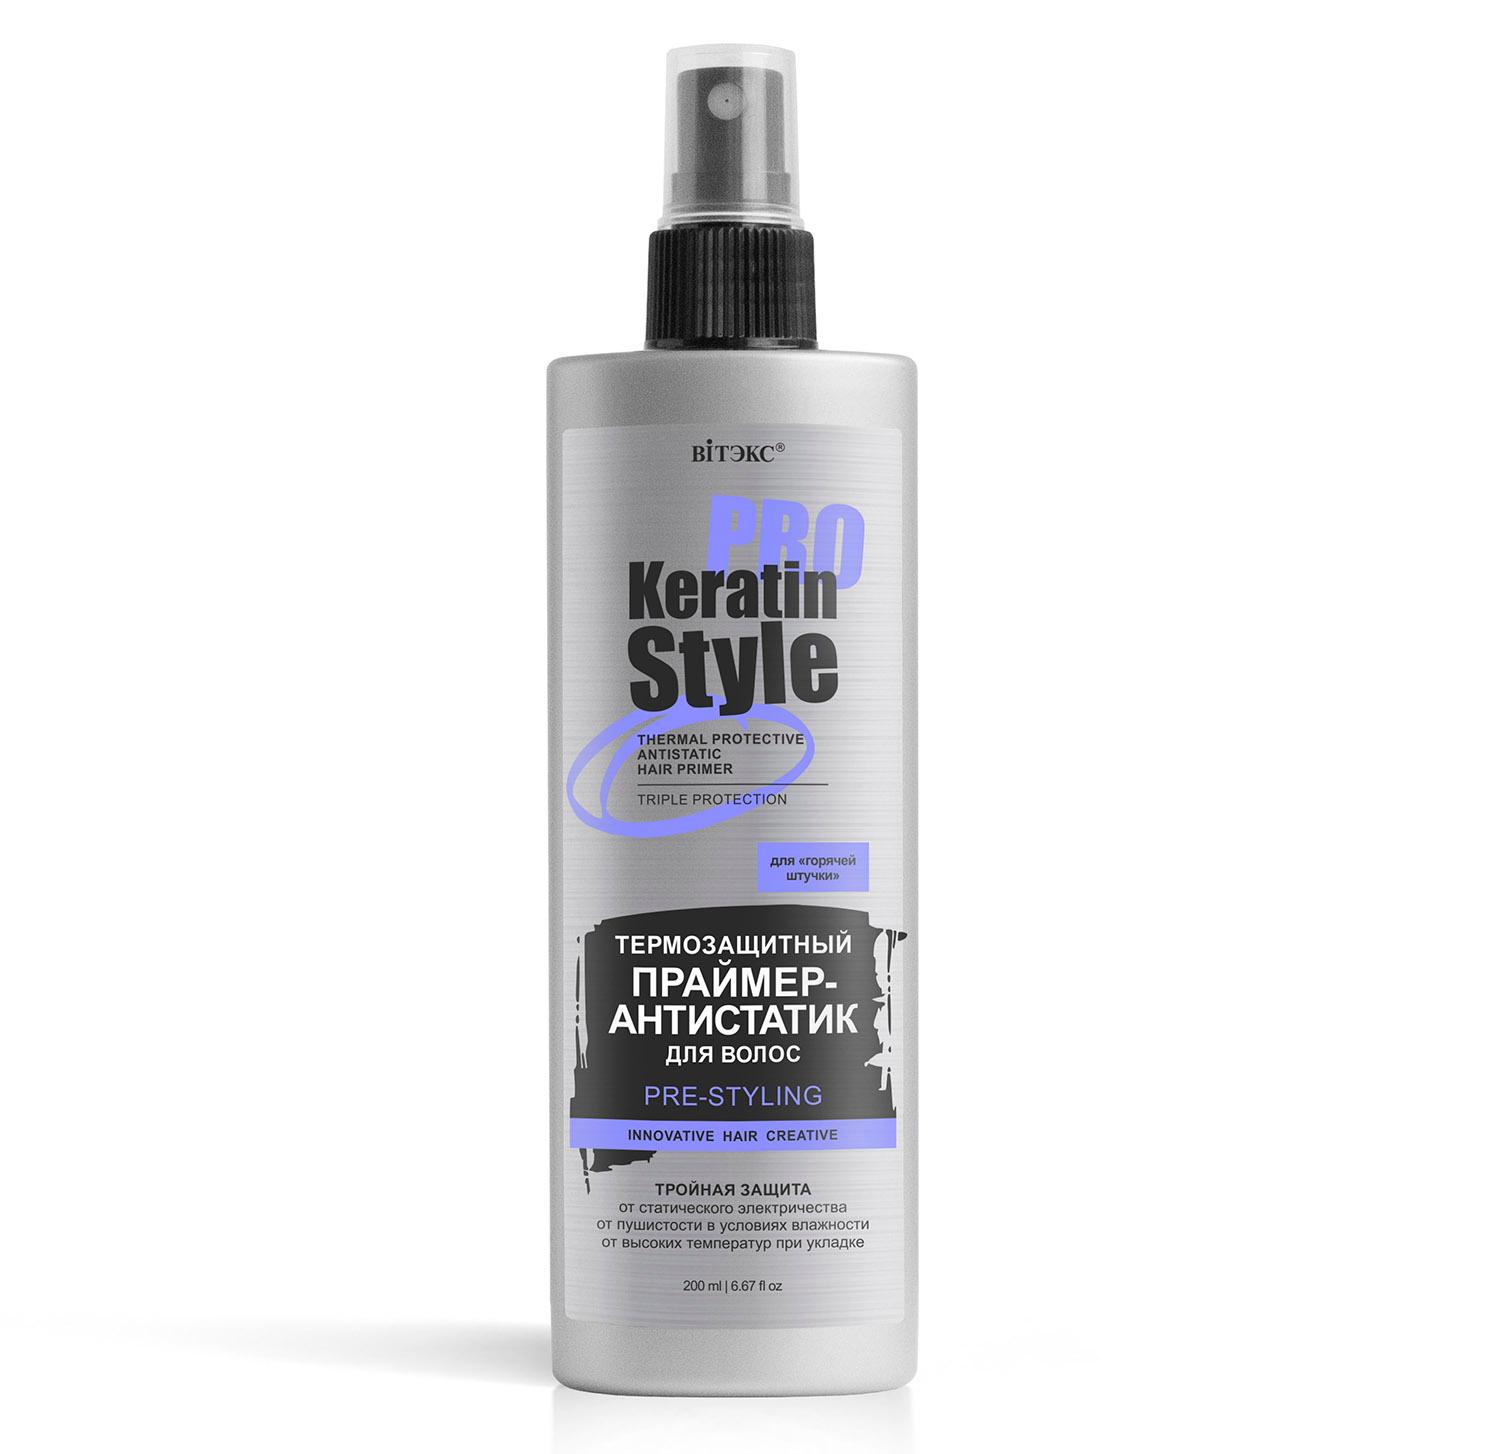 Праймер-антистатик для волос, термозащитный, Вiтэкс, Keratin PRO Style, для горячей штучки, 200 мл., аэрозольная упаковка